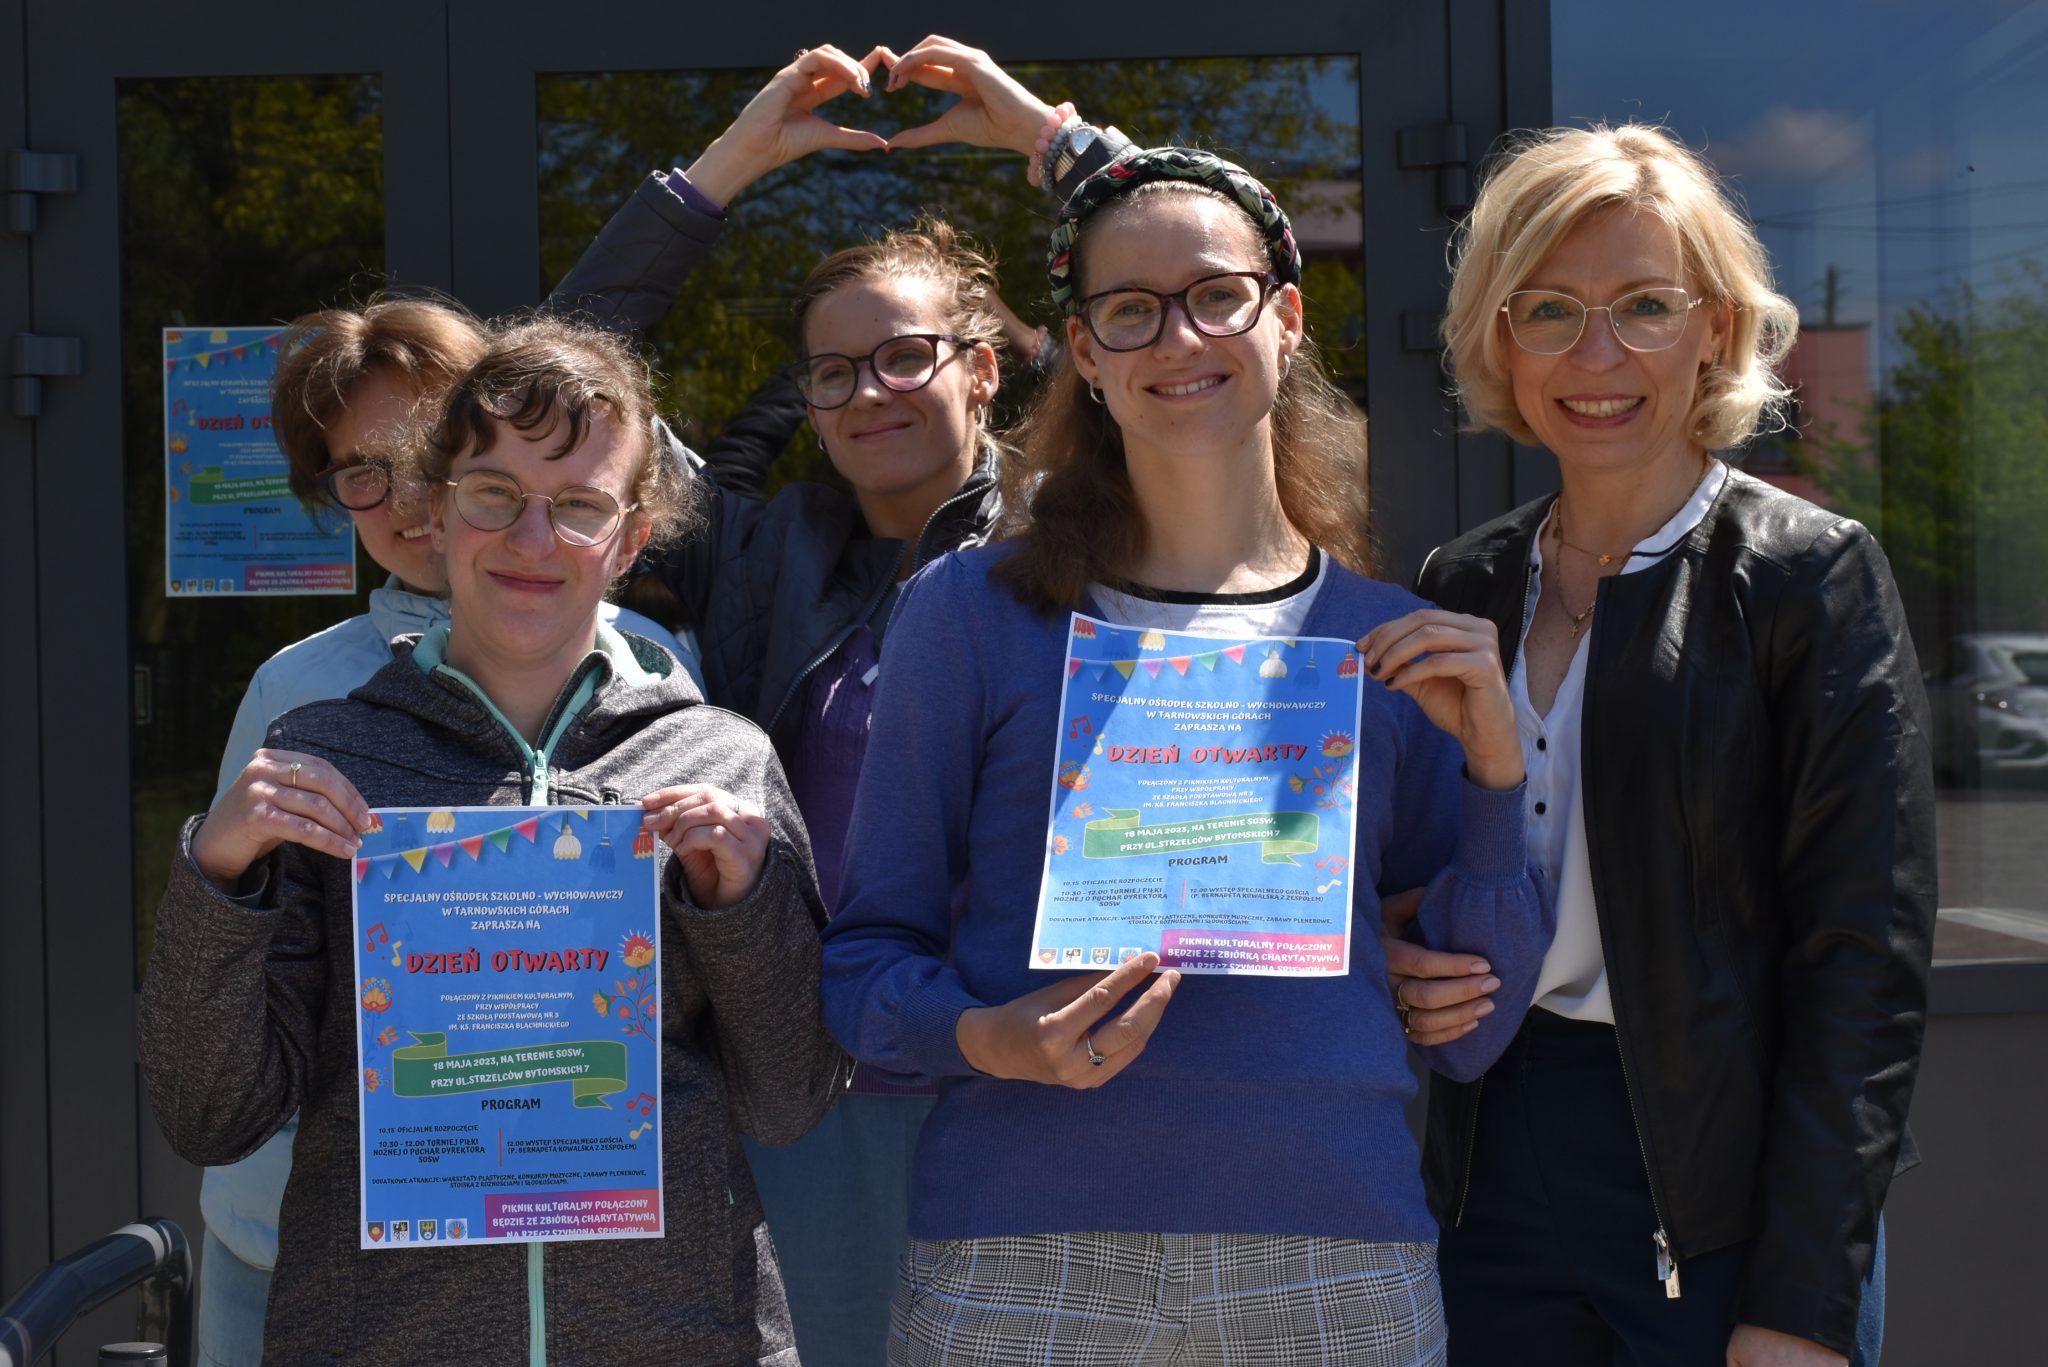 Grupa młodzieży z Panią Dyrektor z Specjalnego Ośrodka Szkolno Wychowawczego w Tarnowskich Górach. Dwie dziewczyny trzymają w rękach plakaty z zaproszeniem na dzień otwarty w dniu 18 maja.